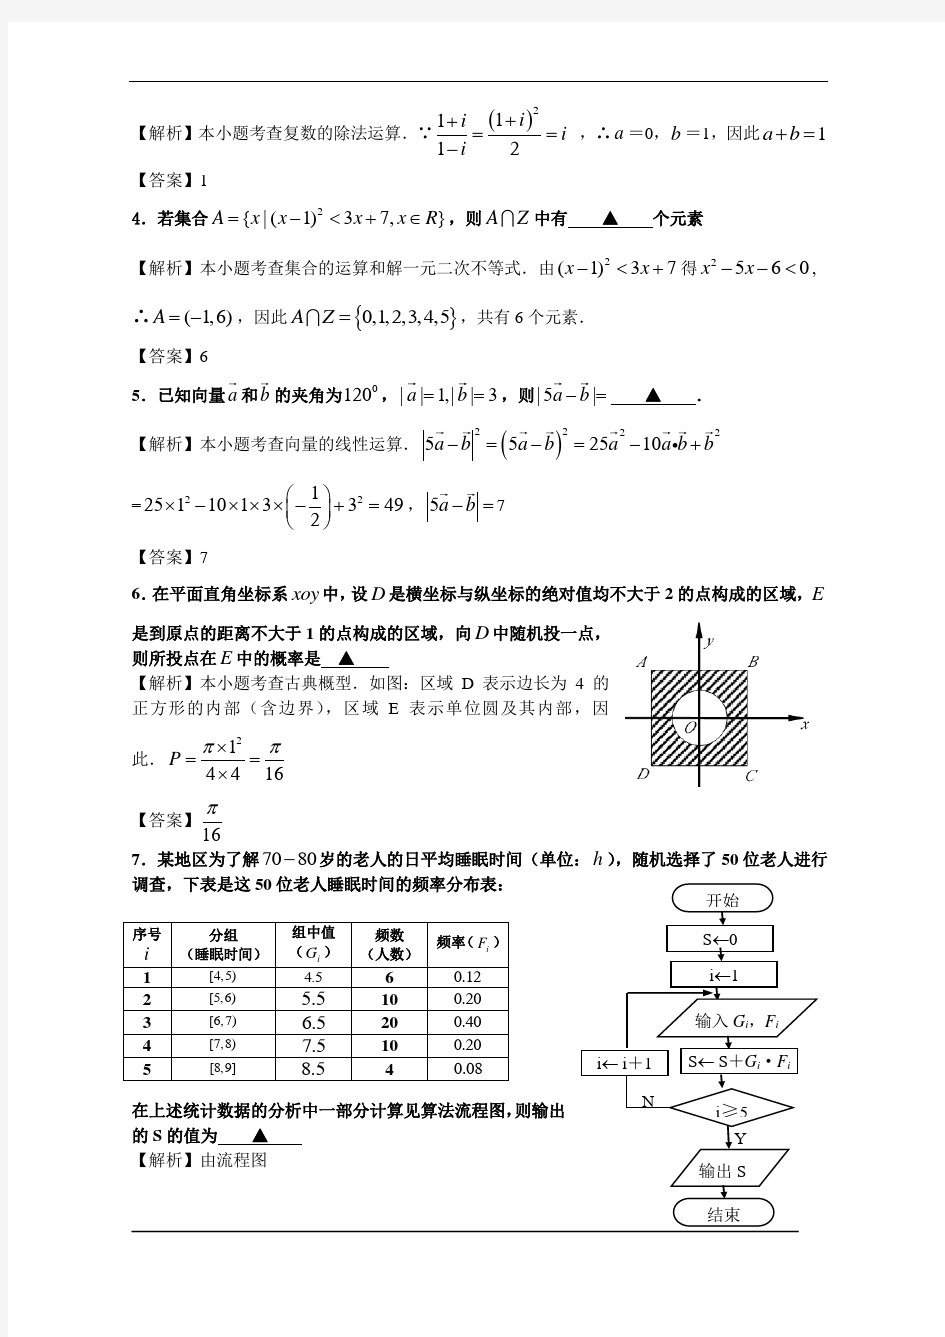 2008高考江苏数学试卷含附加题详细解答